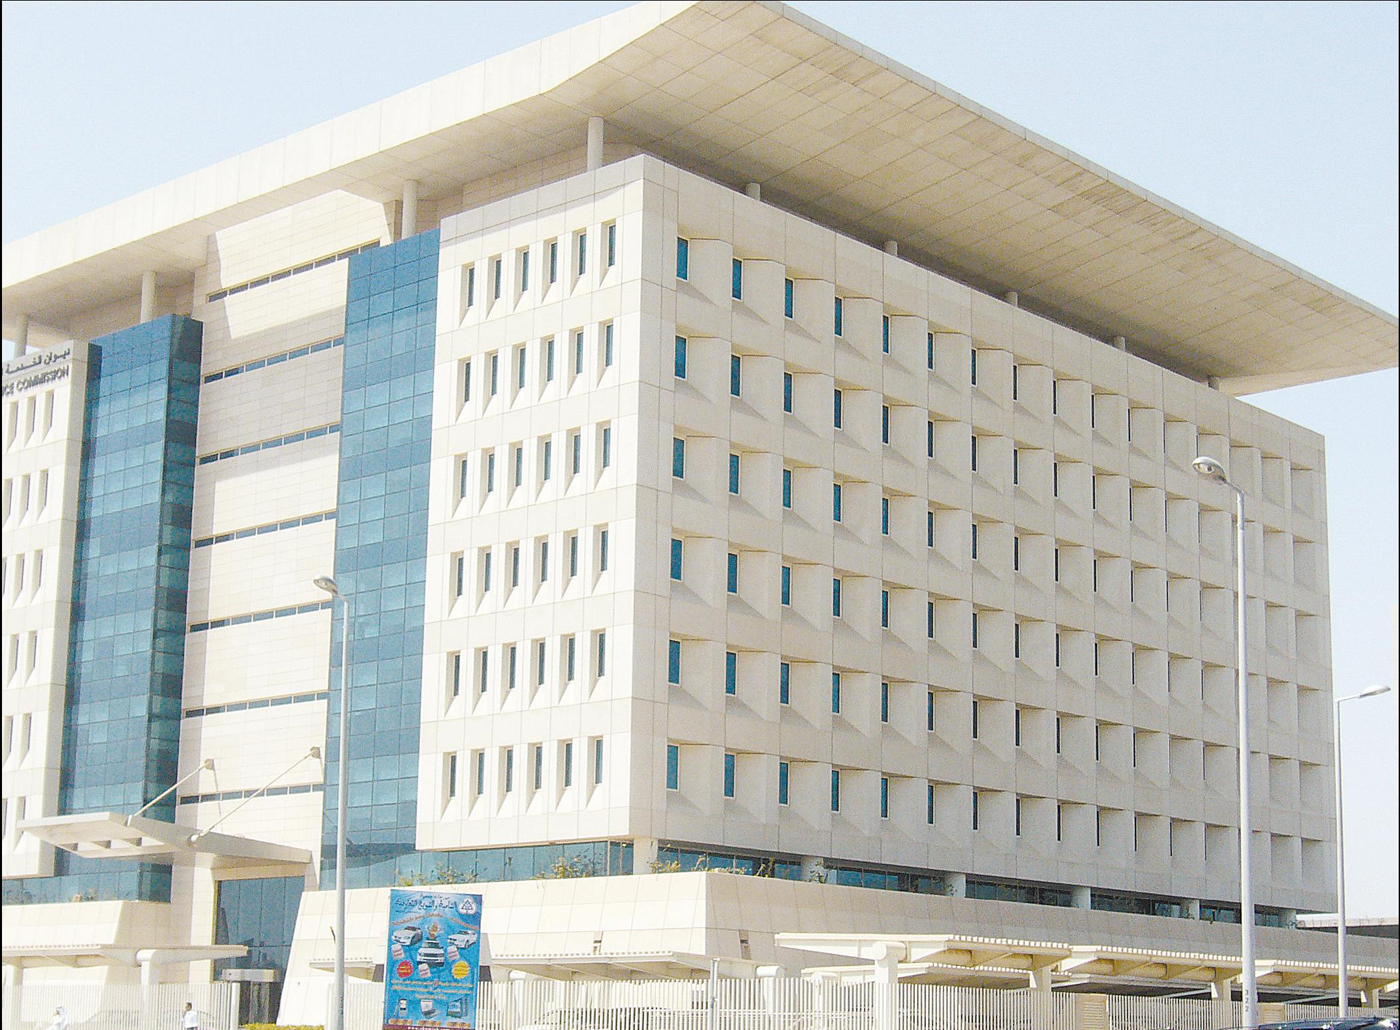 Kuwait's Civil Service Commission